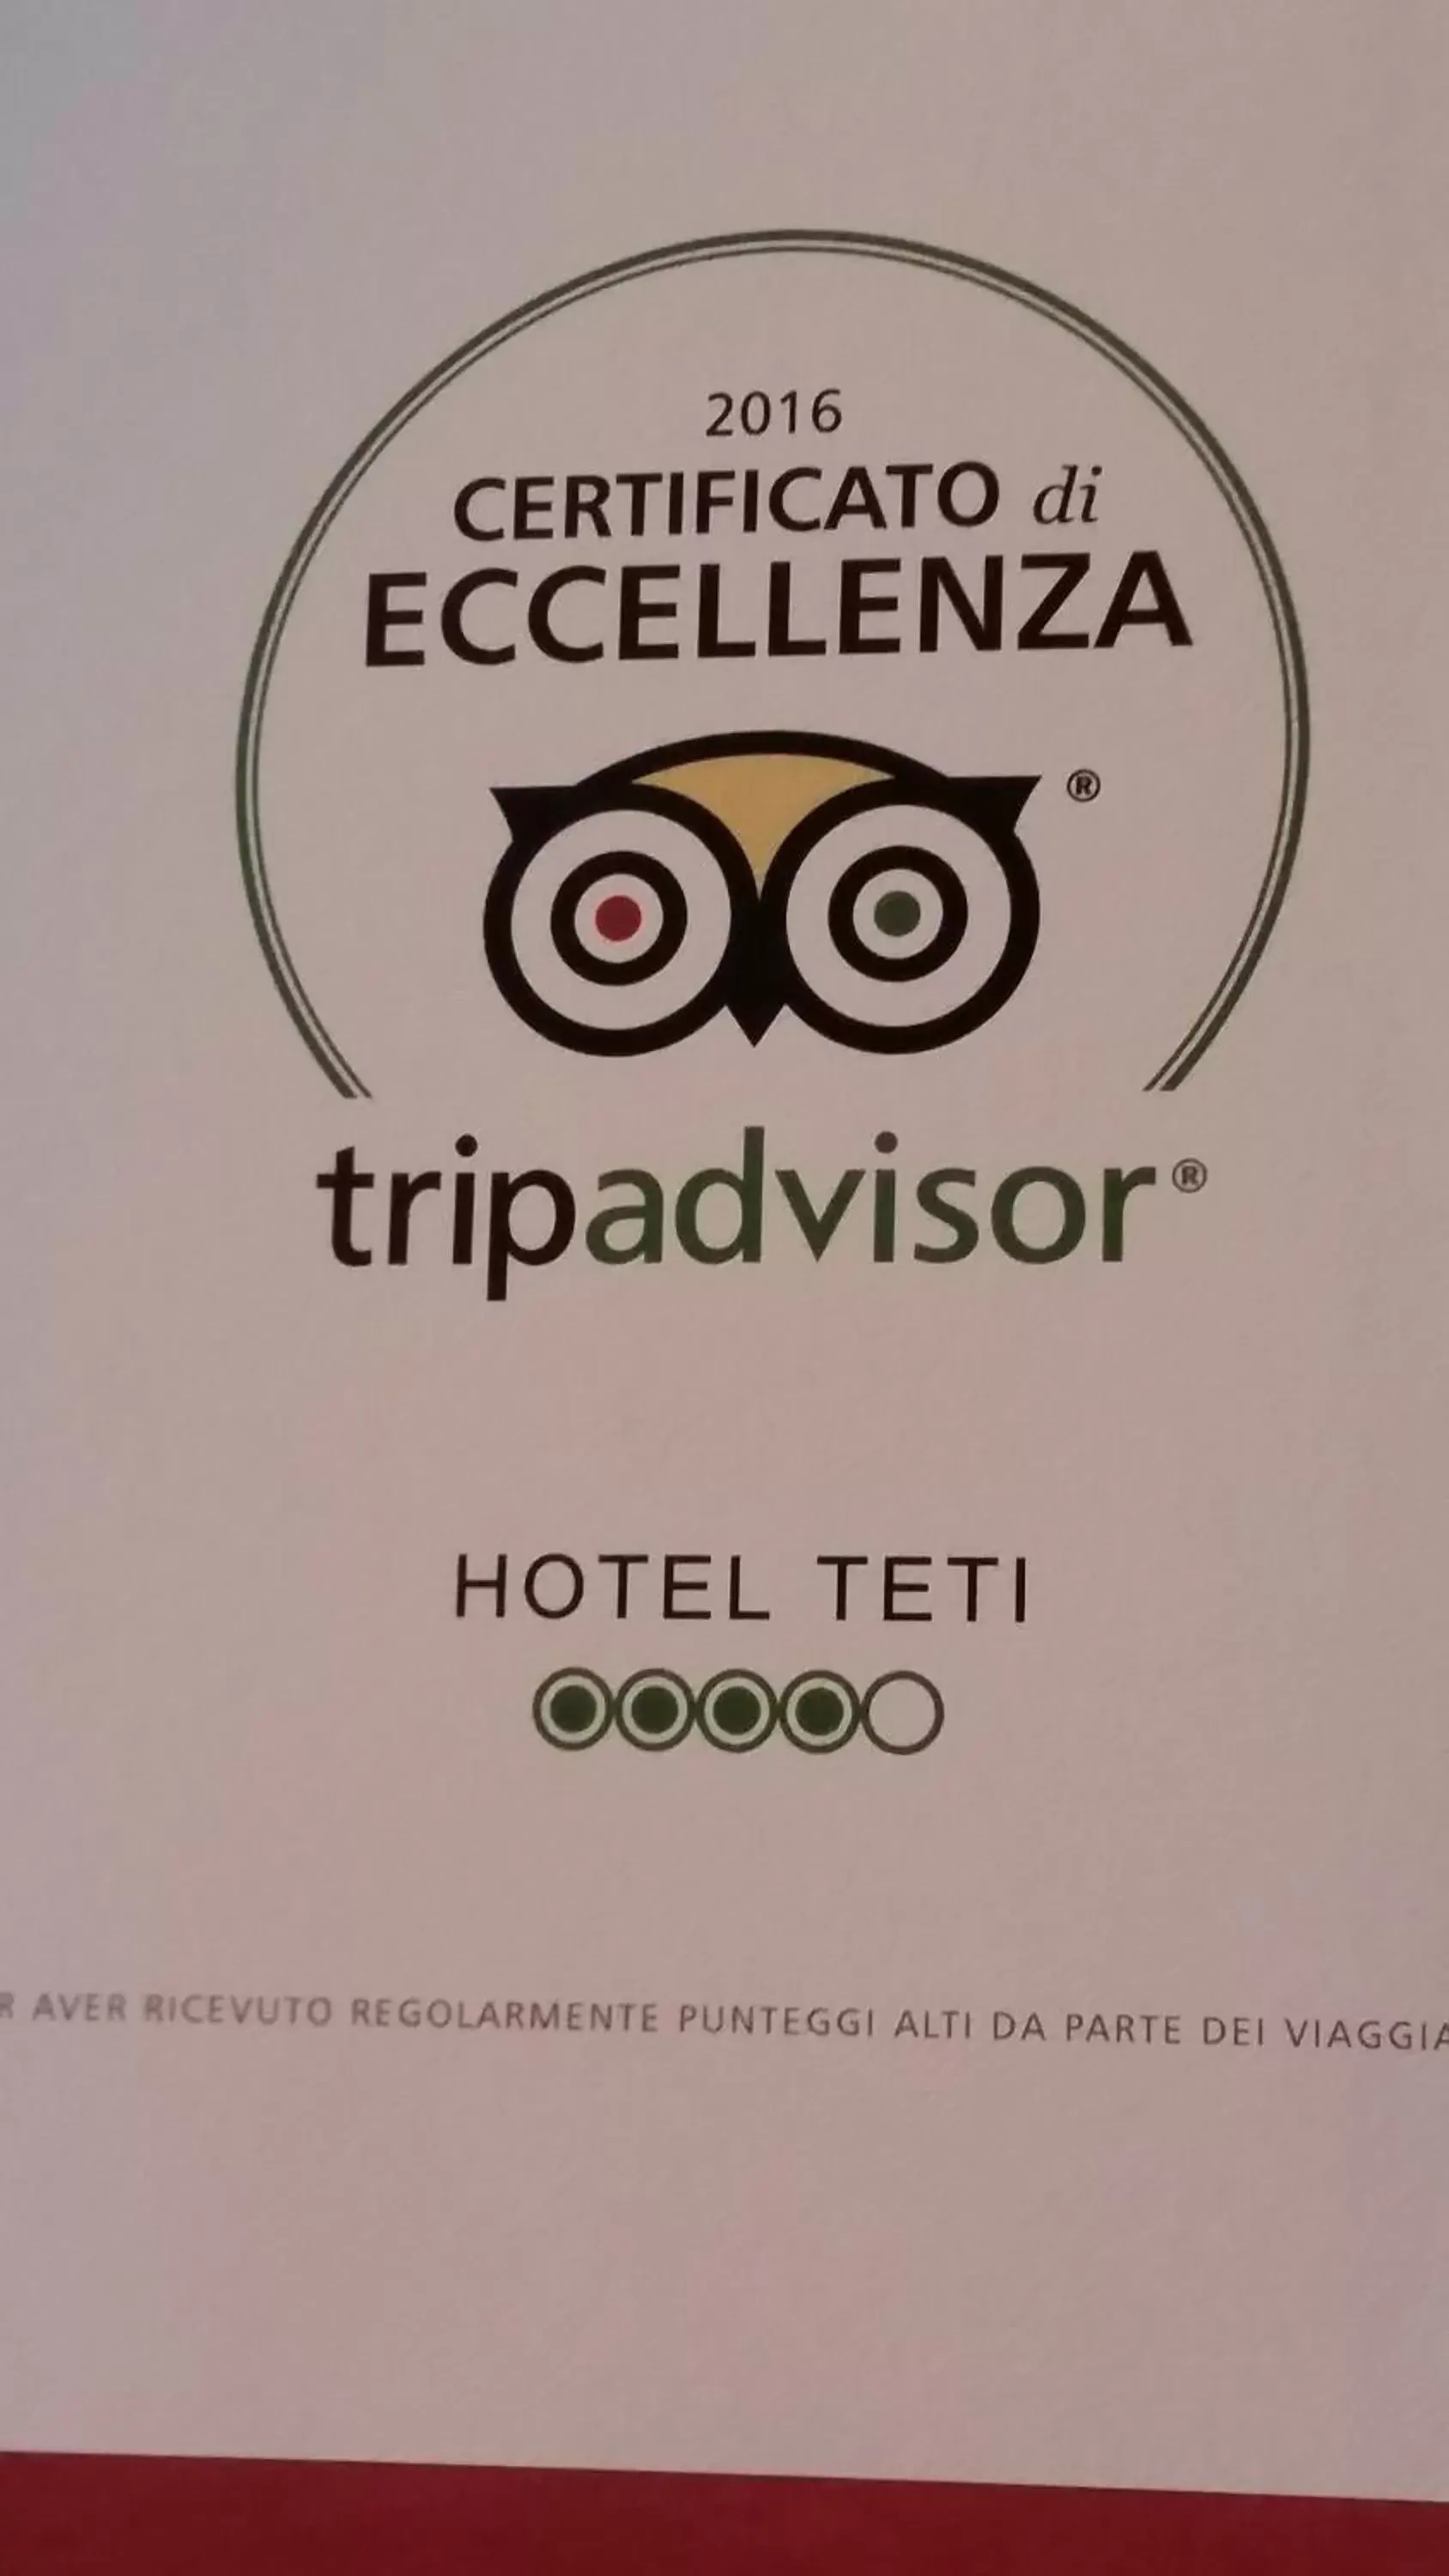 Certificate/Award in Hotel Teti